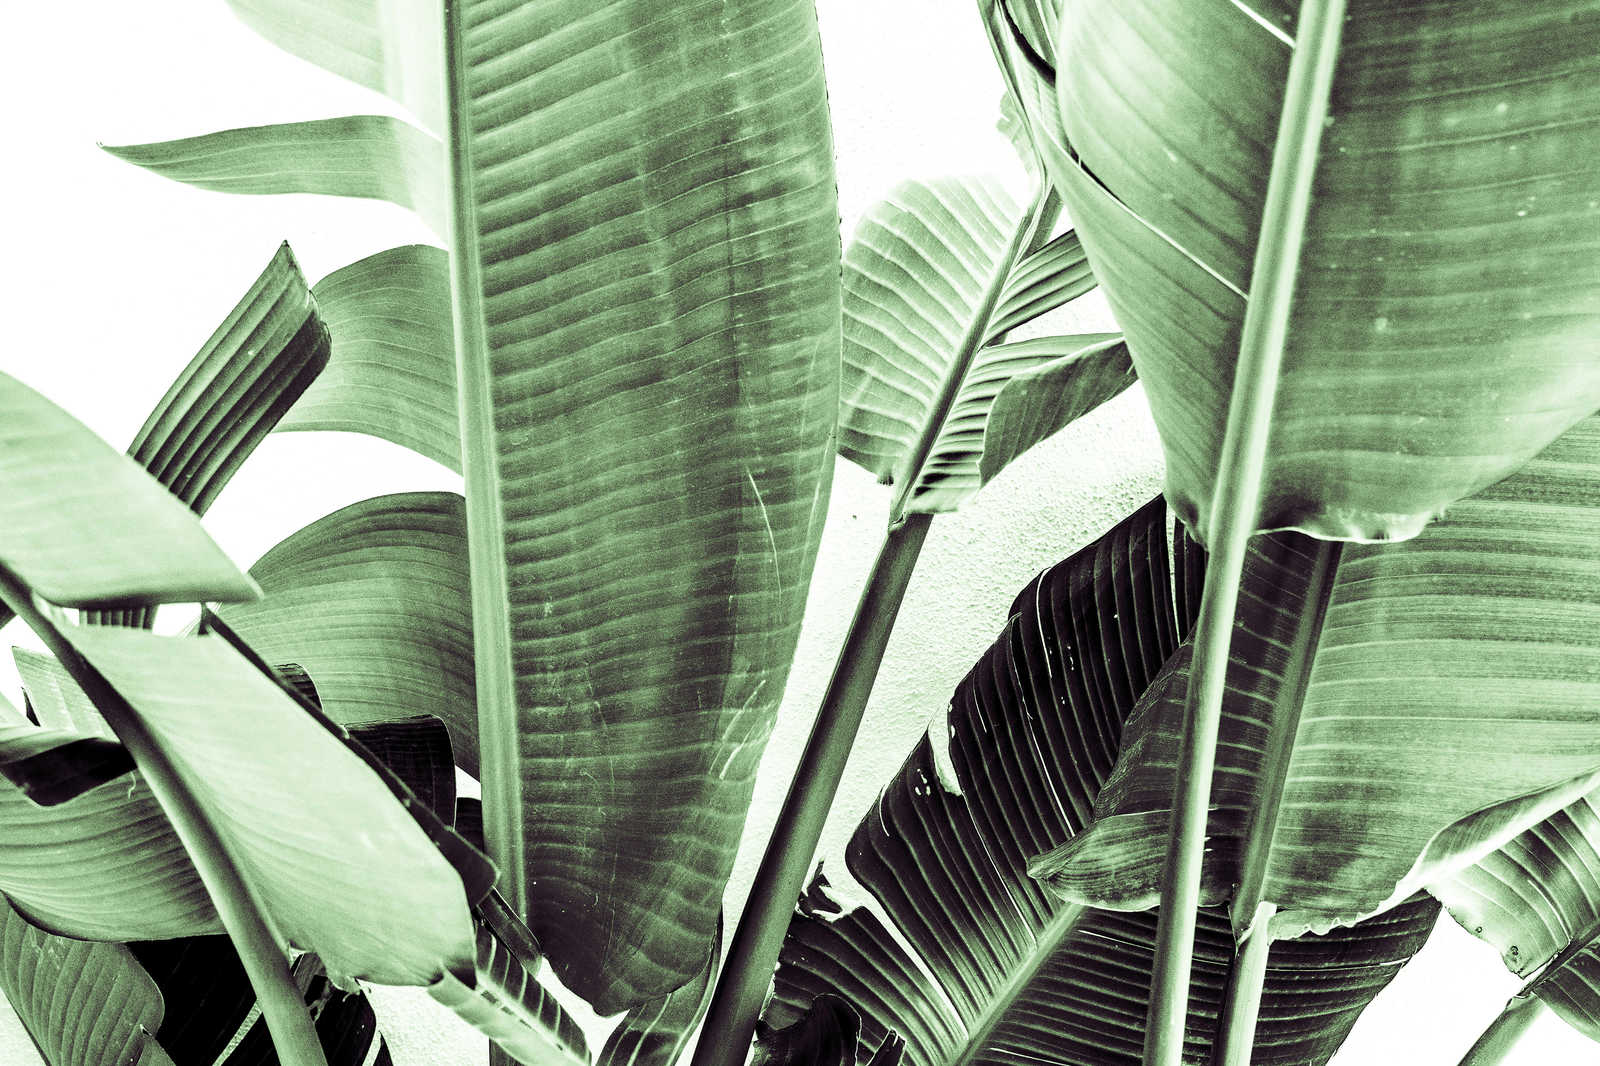             Leinwandbild Detailaufnahme von Palmenblättern – 0,90 m x 0,60 m
        